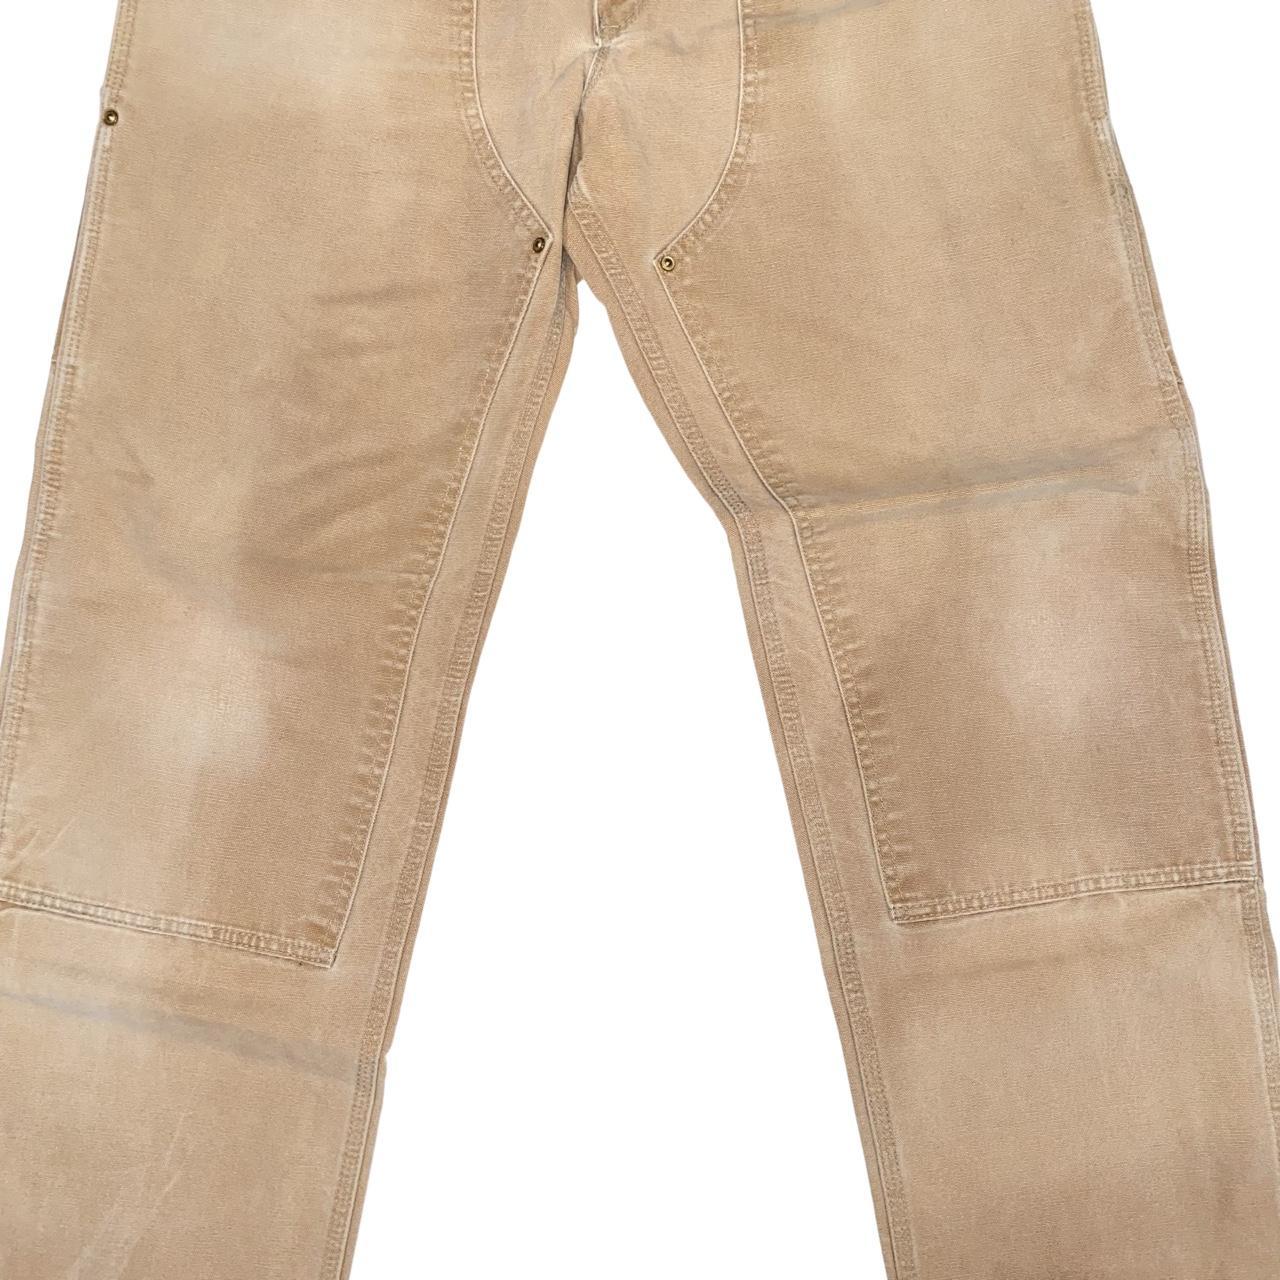 Mens 36/32 carhartt pants #mens #carhartt #pants - Depop